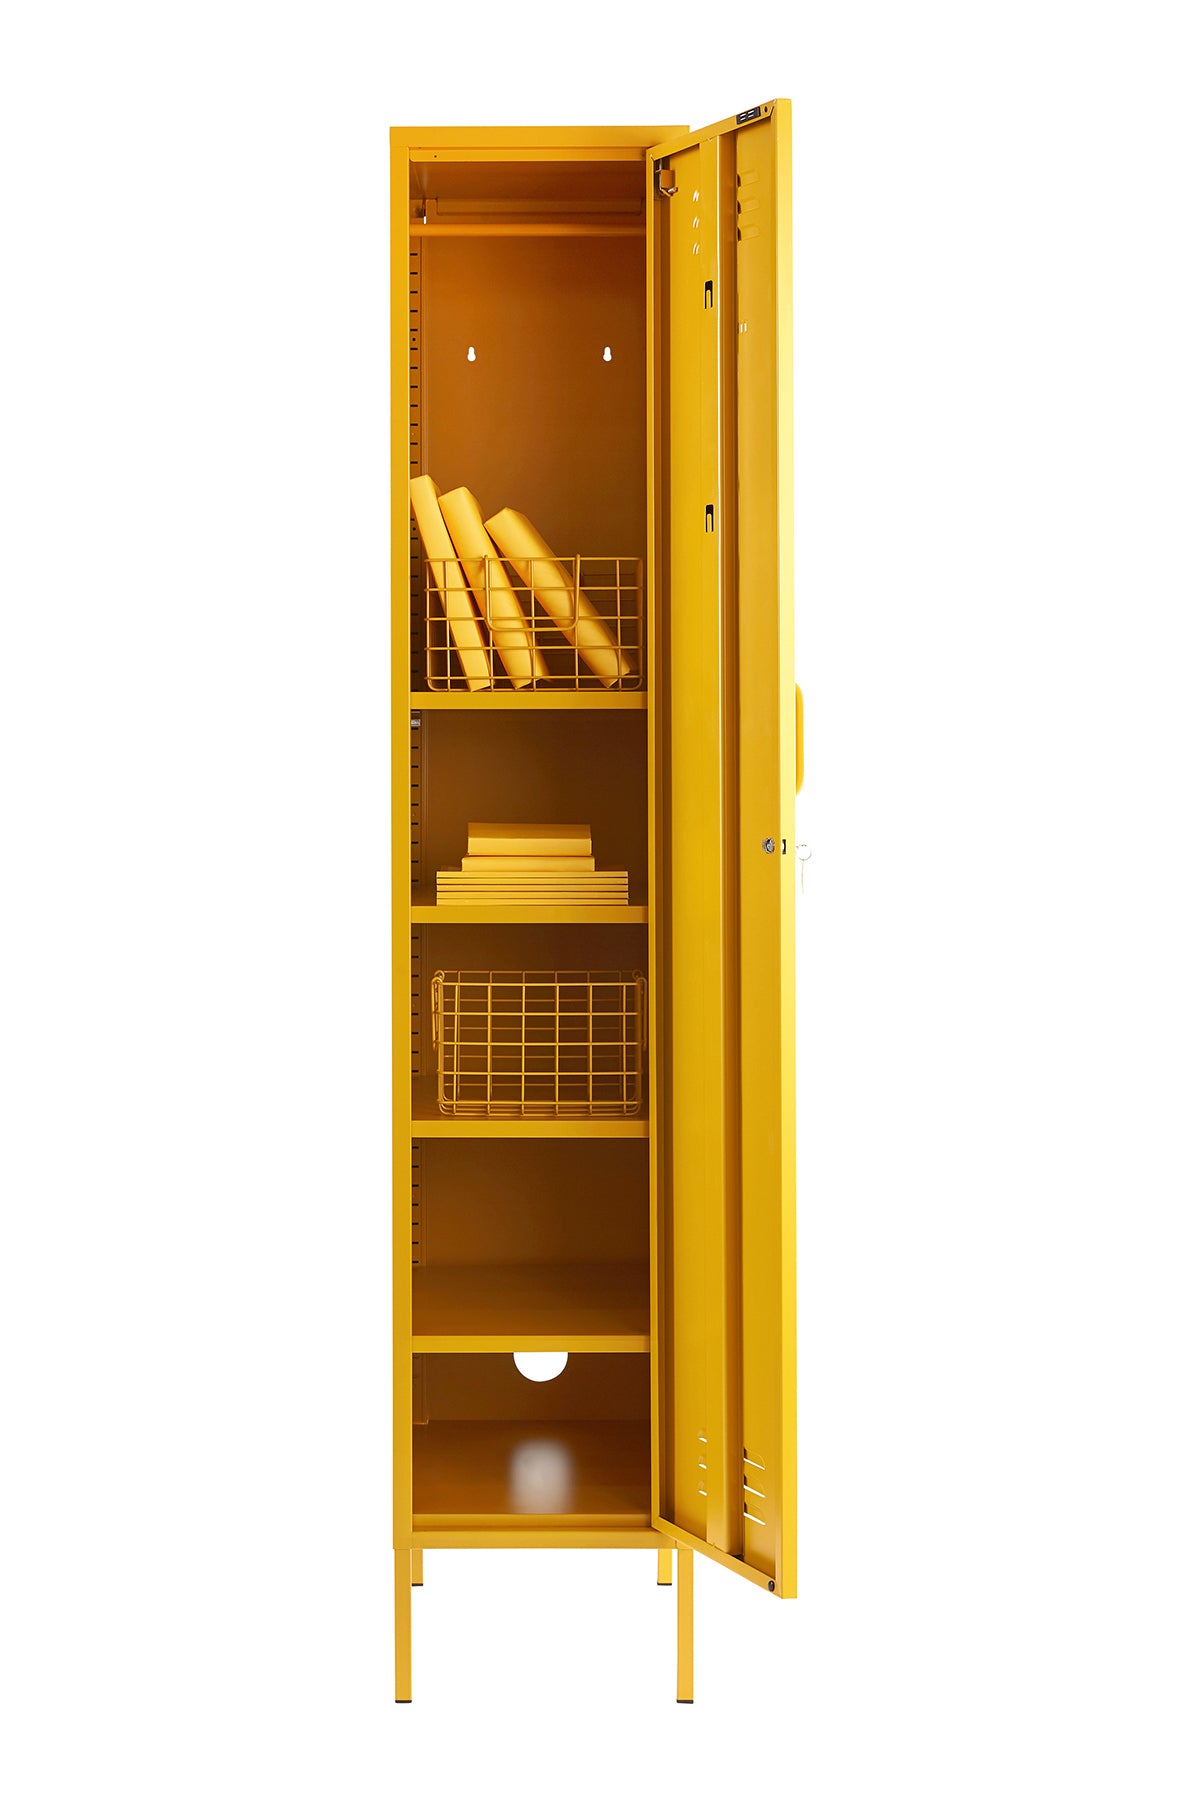 The Skinny Locker in Mustard By Mustard Made